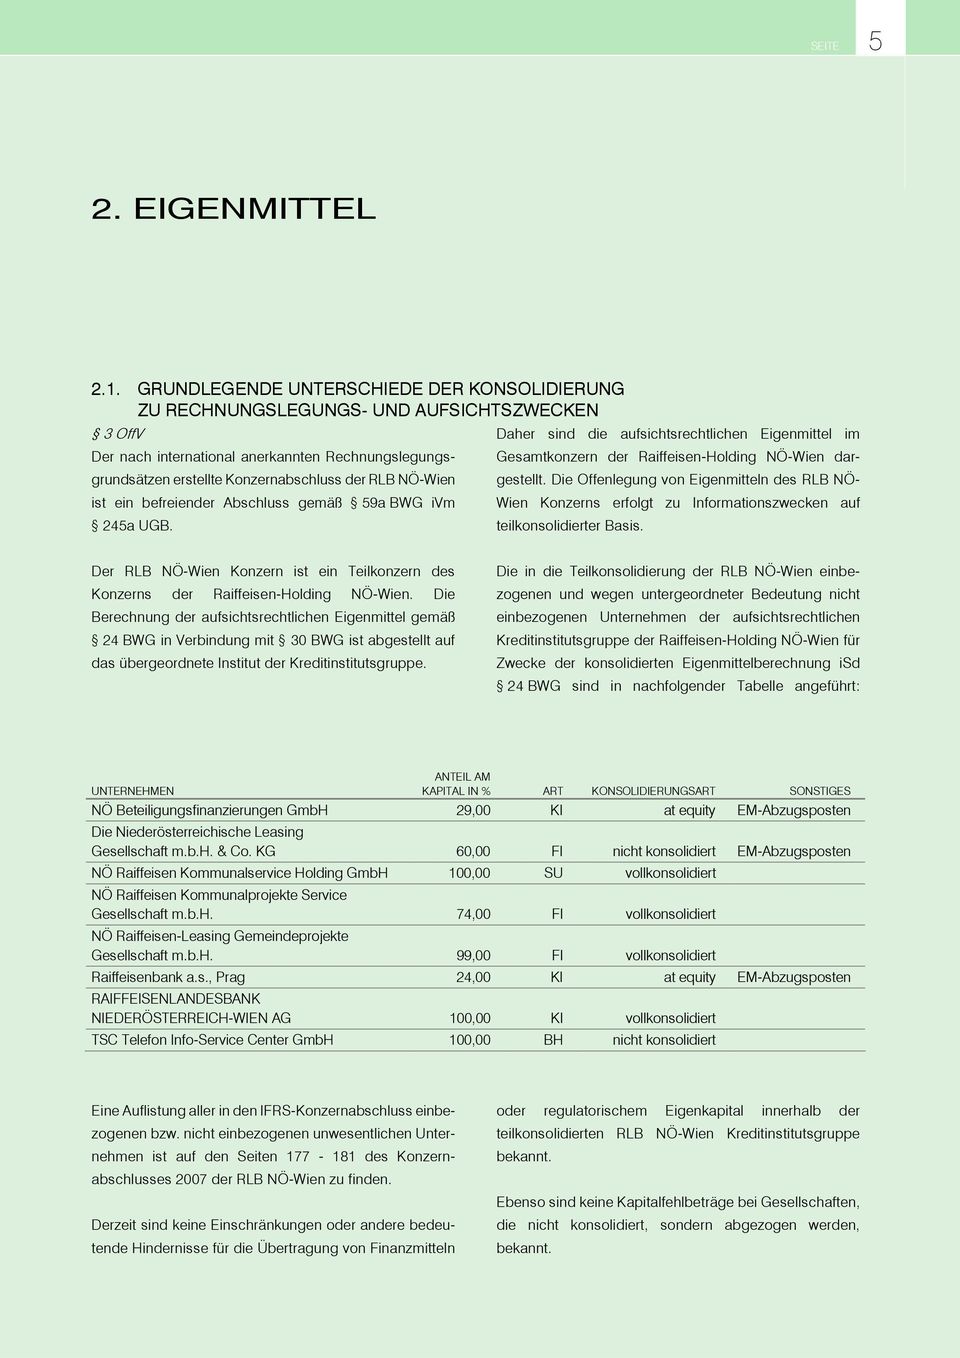 Rechnungslegungsgrundsätzen erstellte Konzernabschluss der RLB NÖ-Wien gestellt.